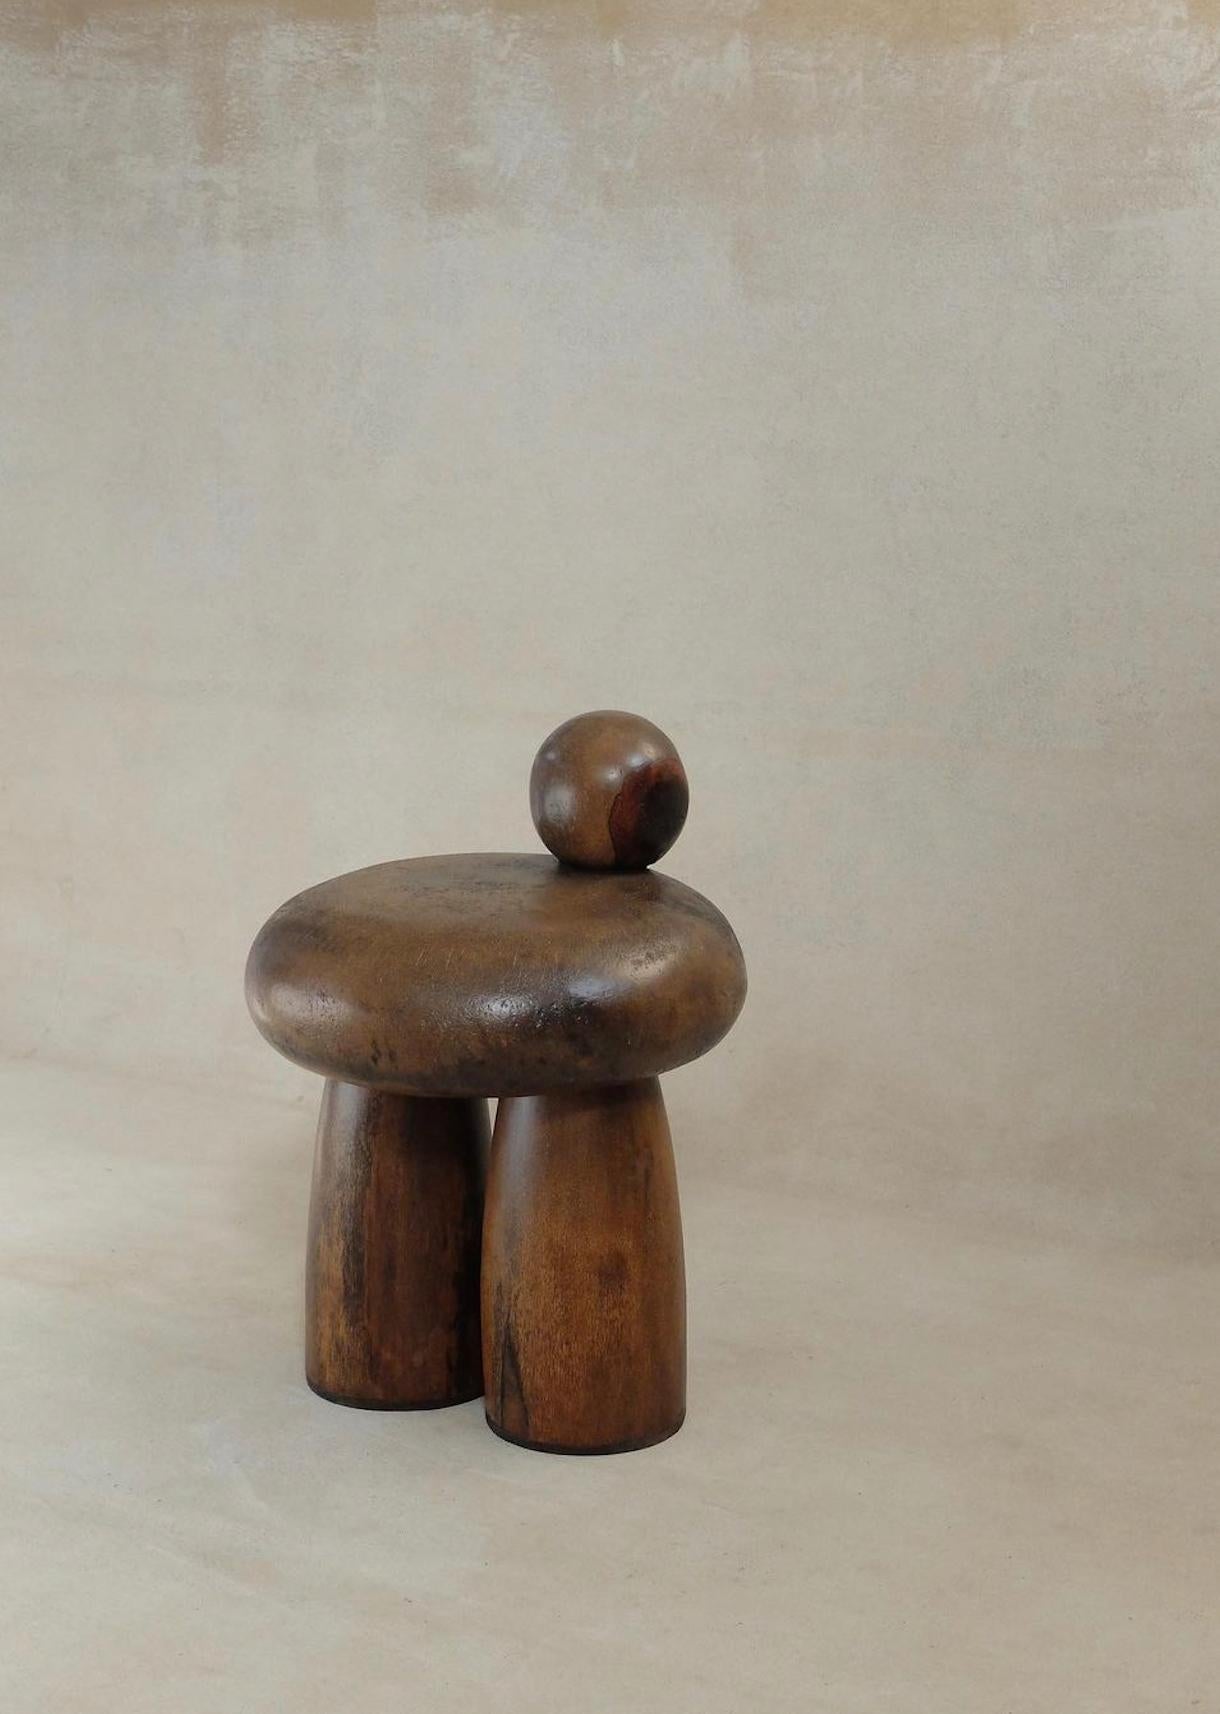 Handgefertigter Sitz, entworfen und hergestellt in Tunesien.
Der handgeschnitzte Palmenholzsitz Petite Ourse besticht durch sein einfaches, aber fesselndes Design mit abgerundeten Formen, die die natürliche Maserung des Holzes hervorheben. Die